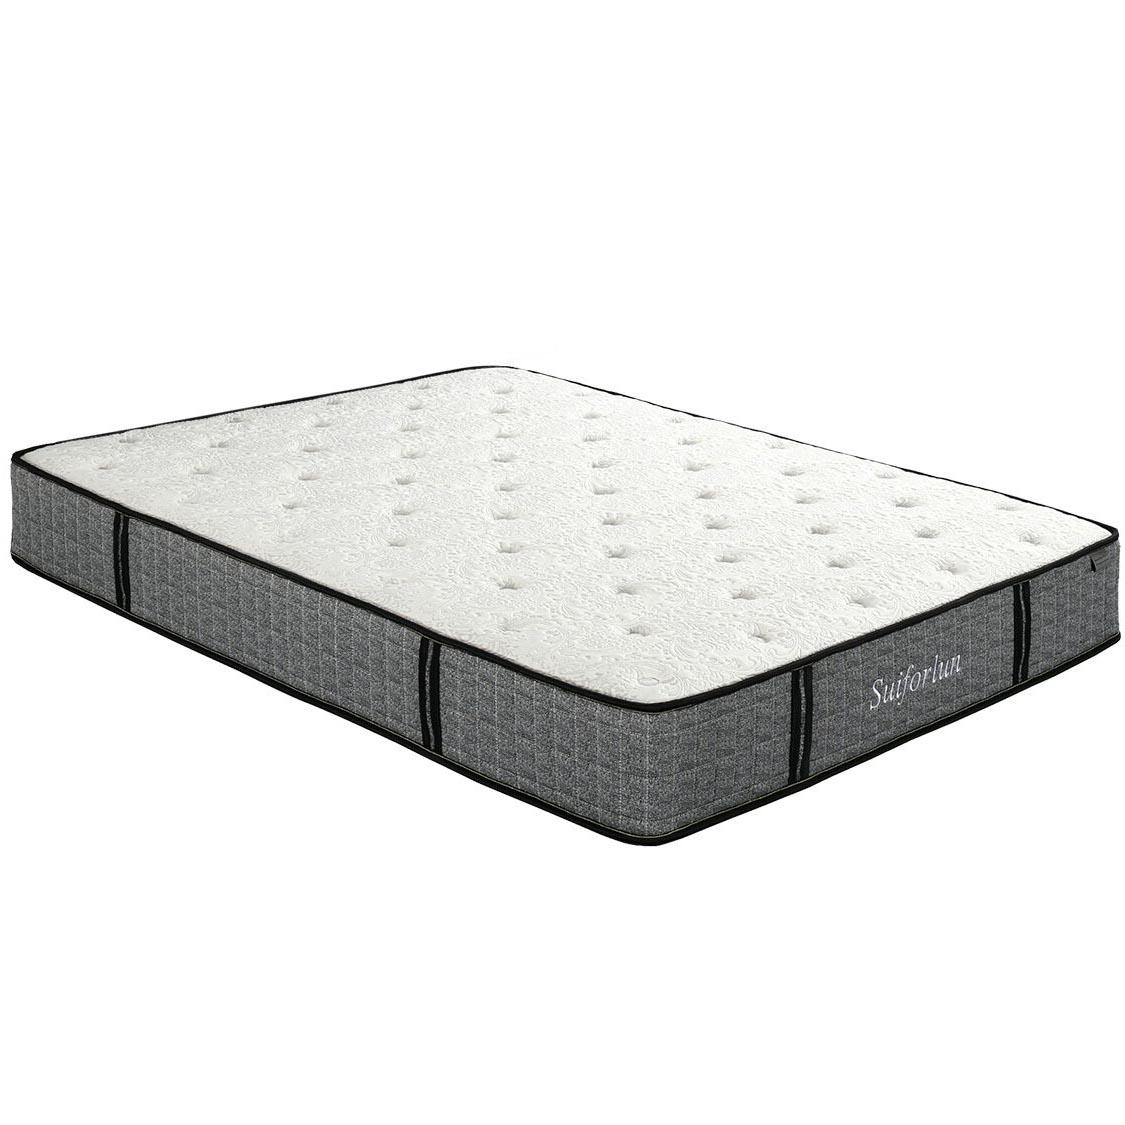 Suiforlun mattress queen hybrid mattress supplier-2